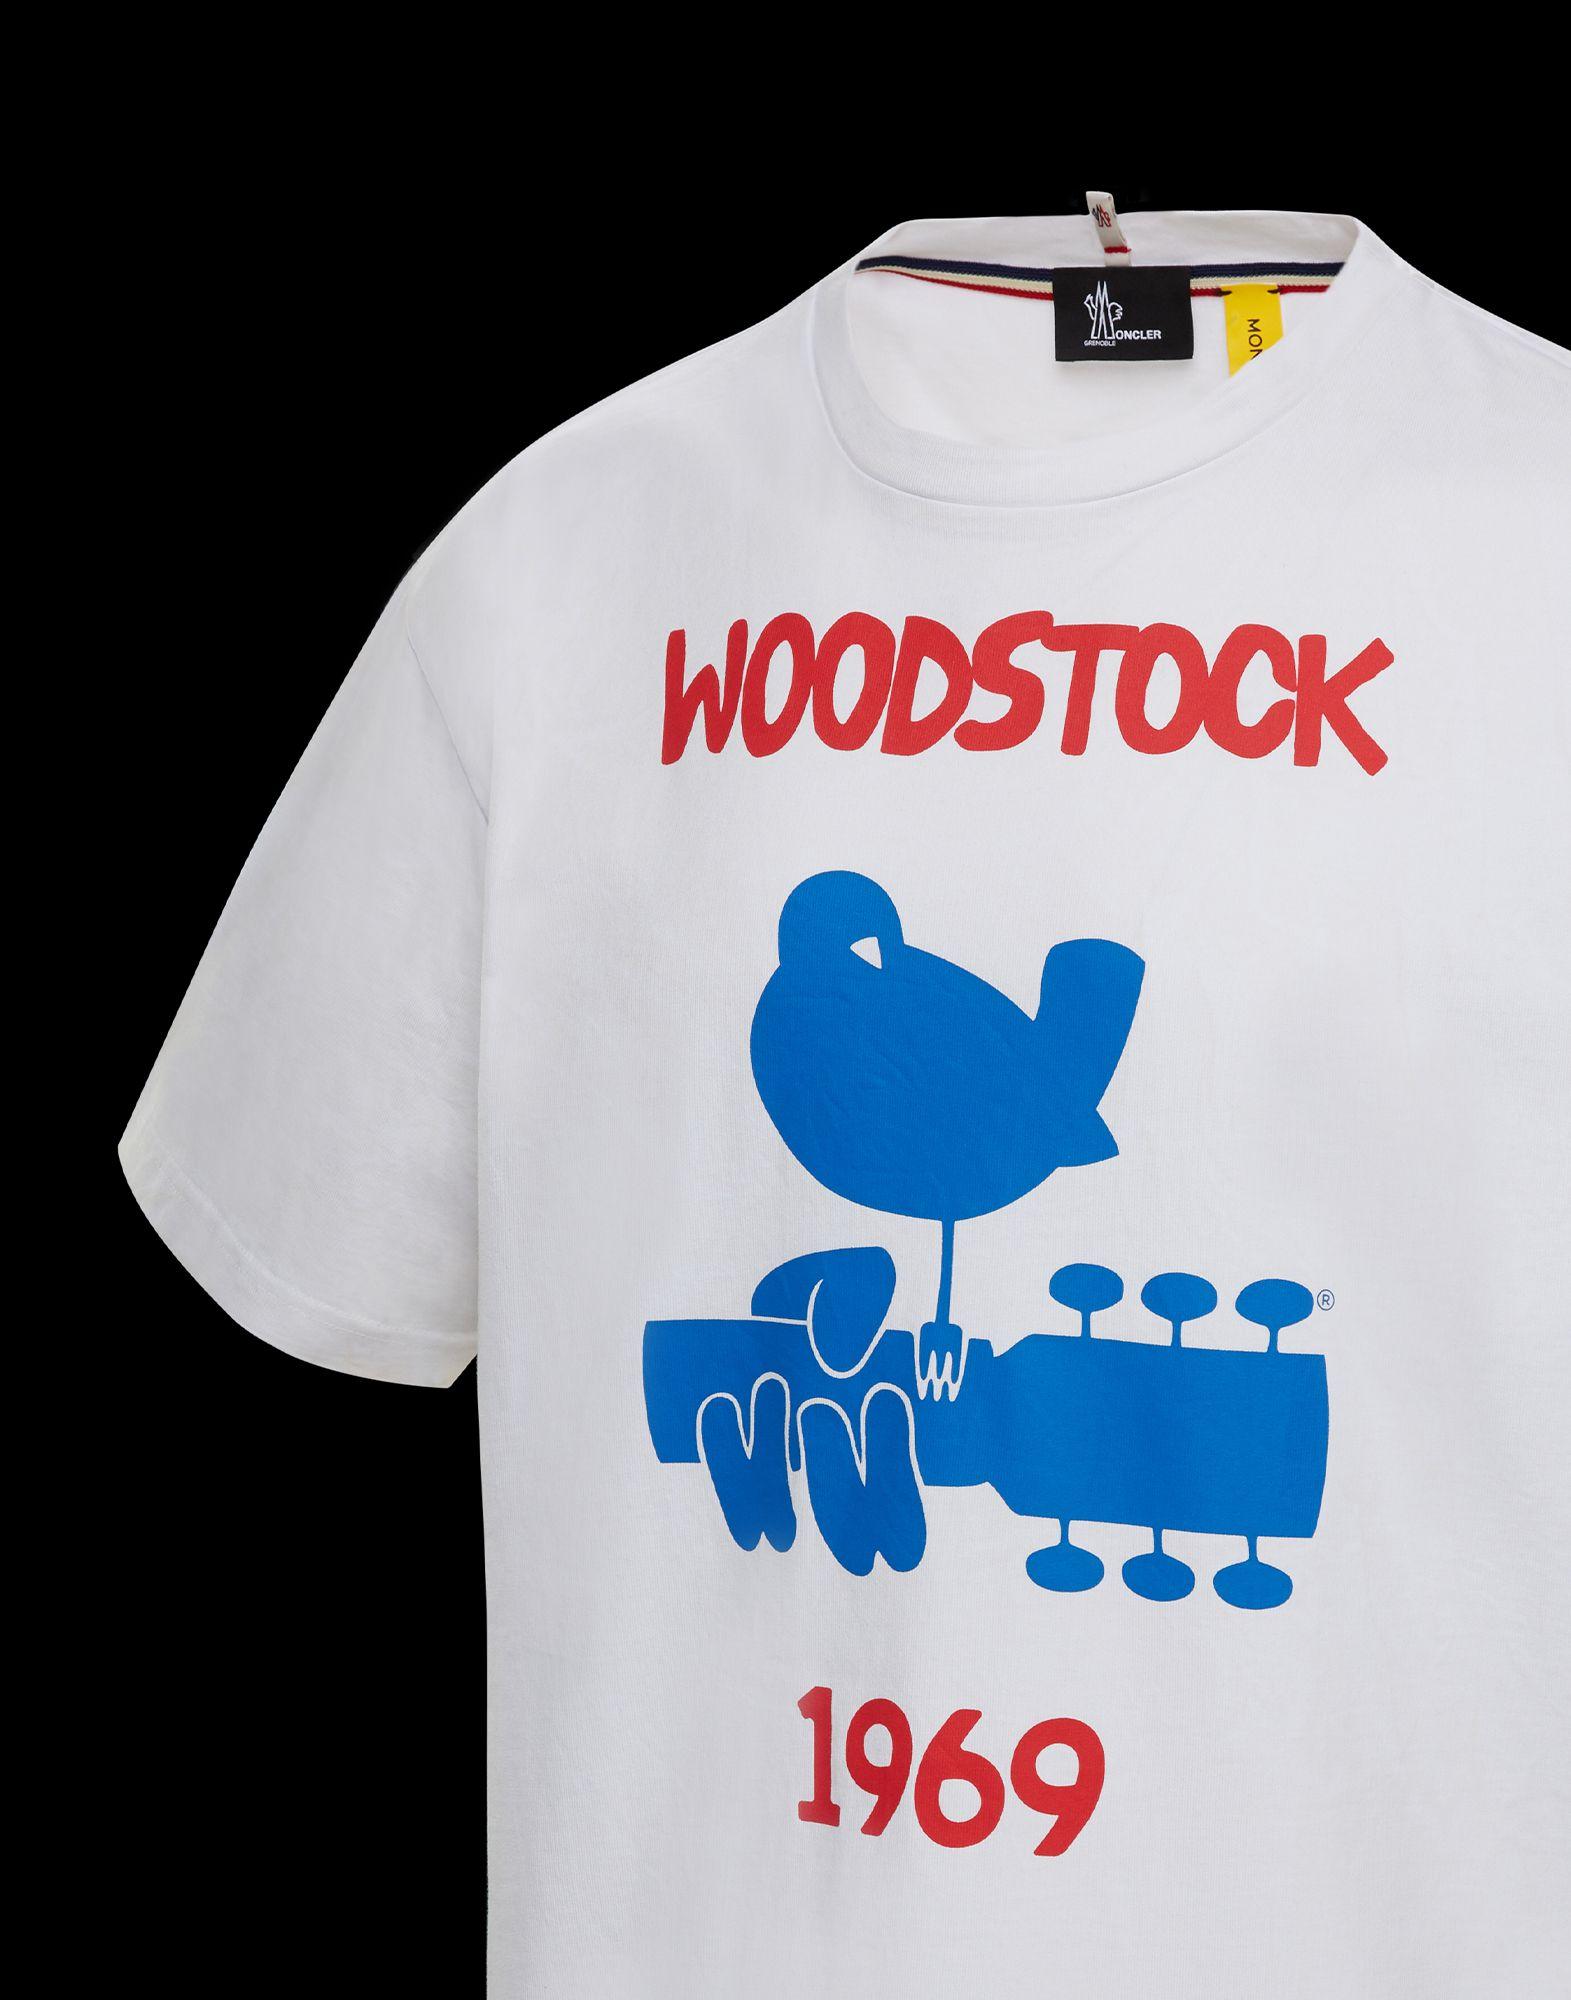 モンクレール　MONCLER 1969 グルノーブル ウッドストックTシャツ